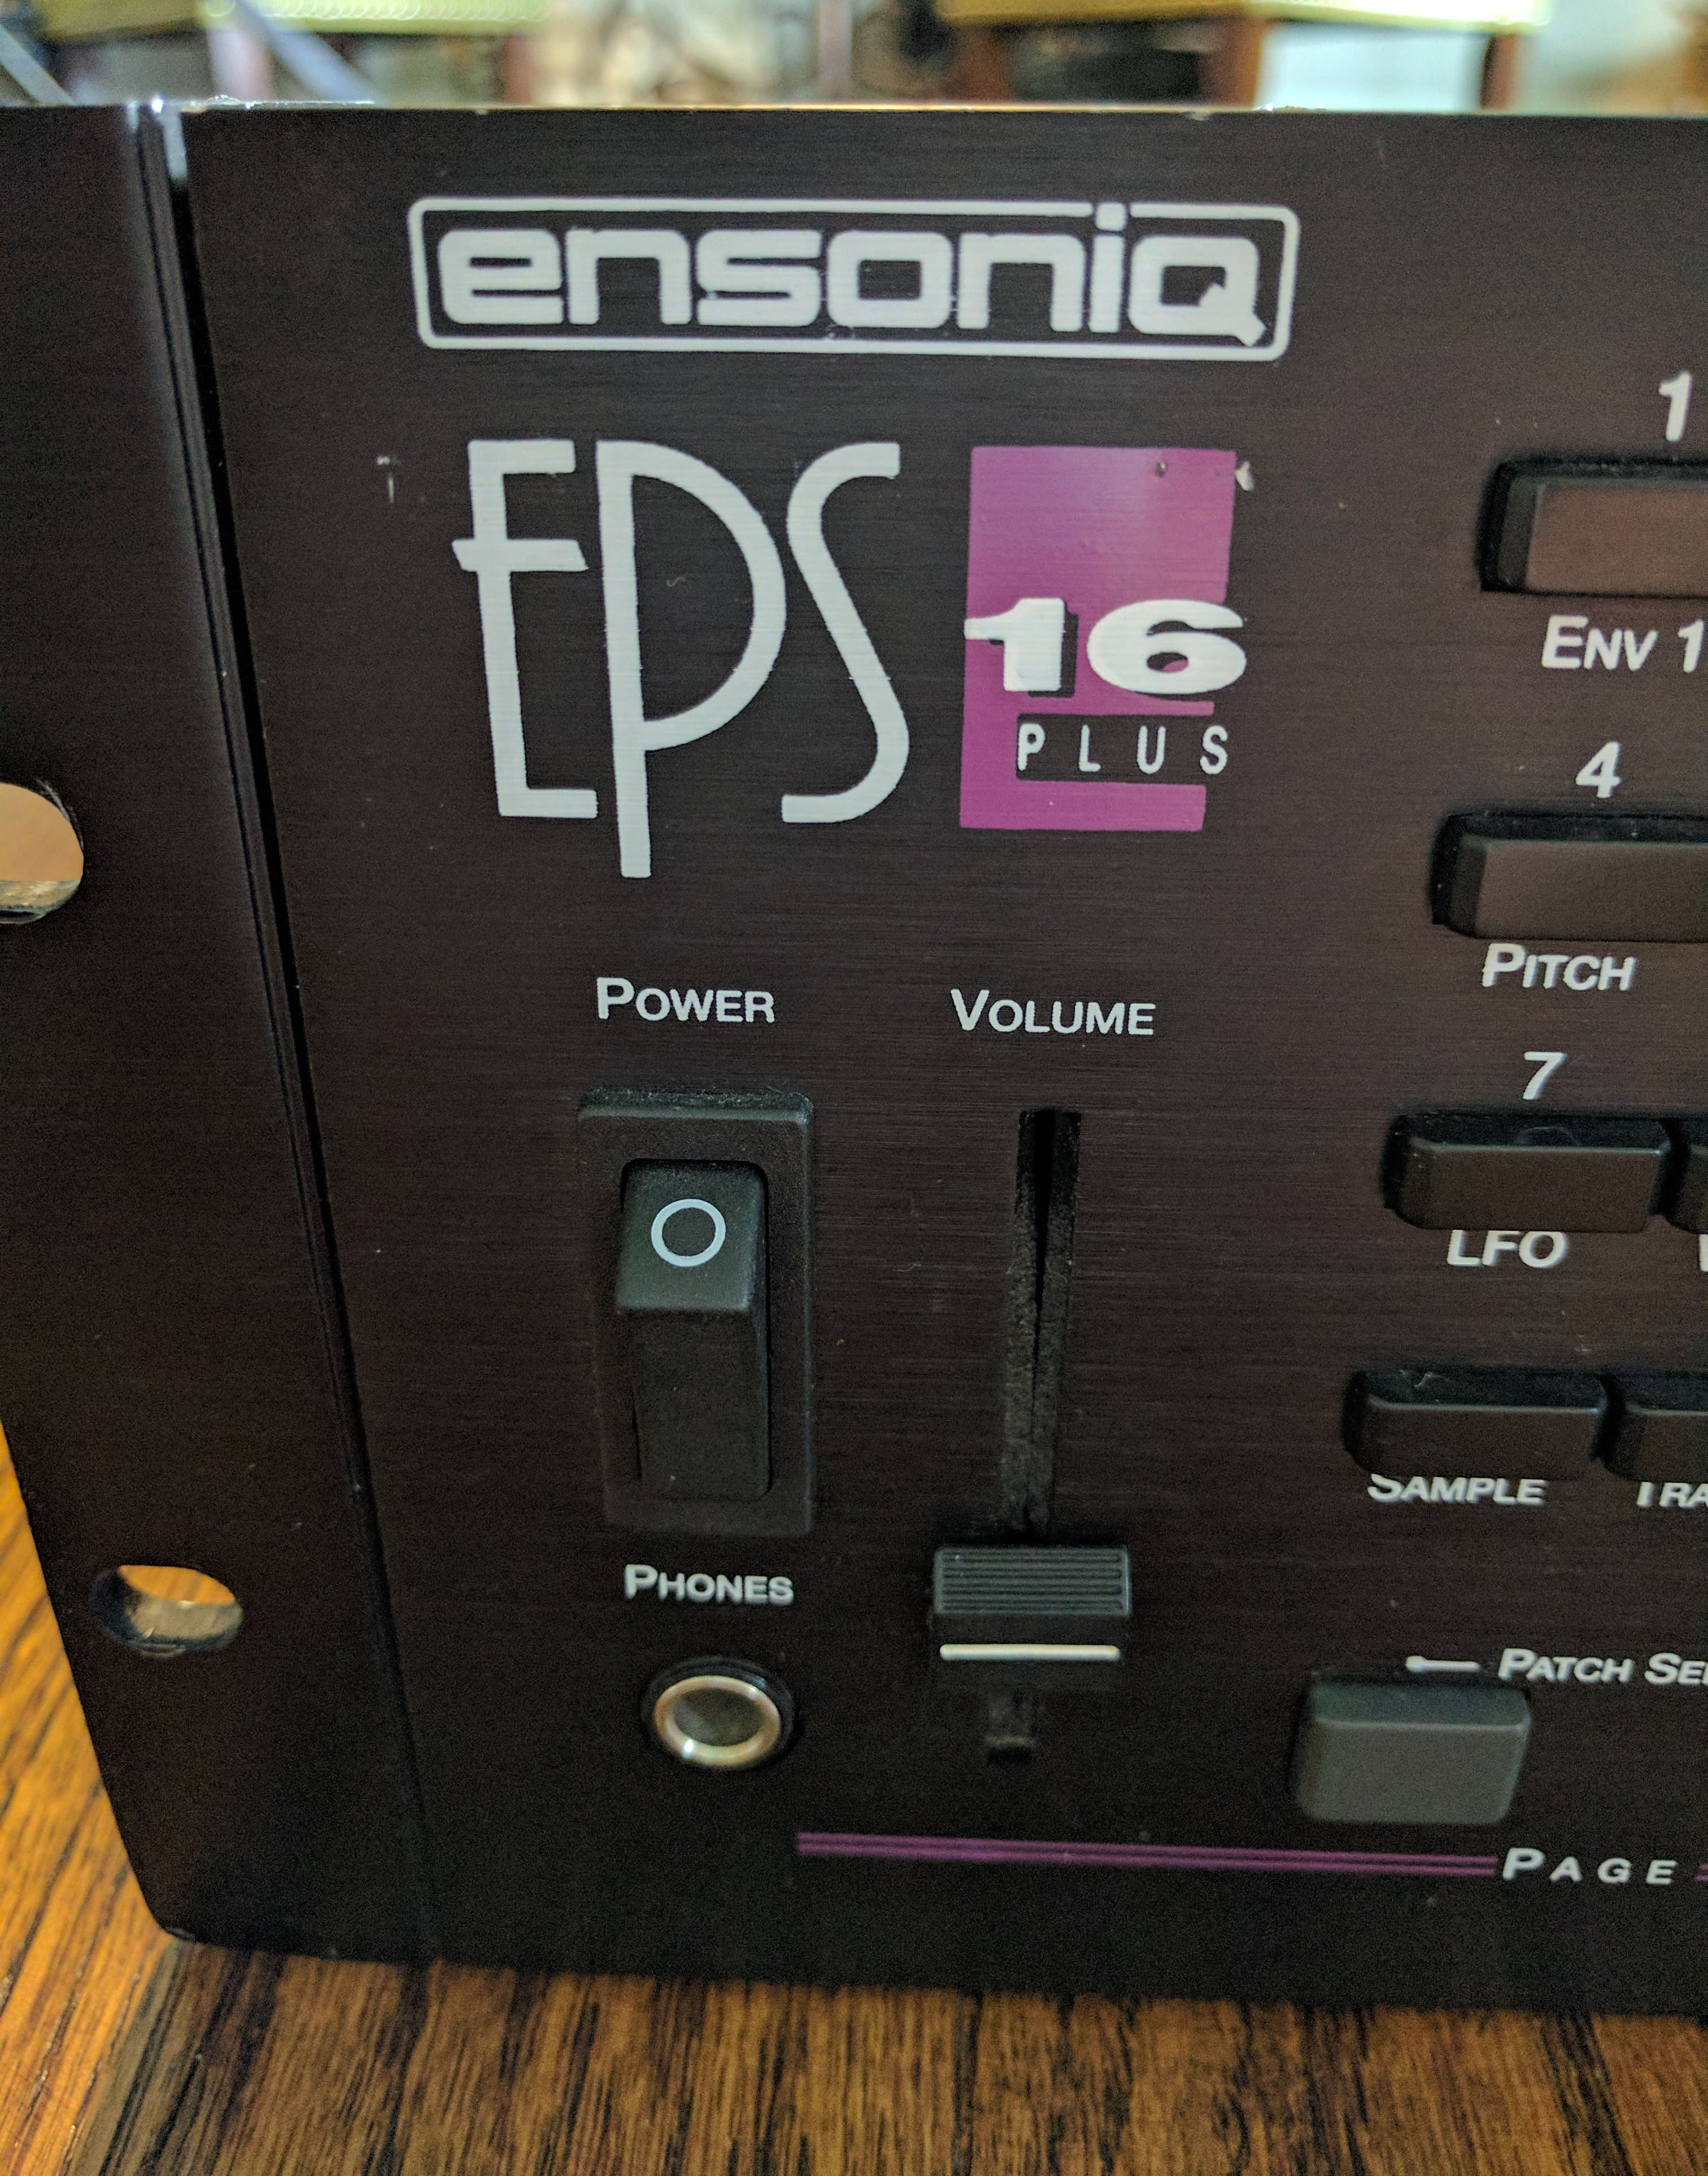 Ensoniq EPS-16 Plus rack